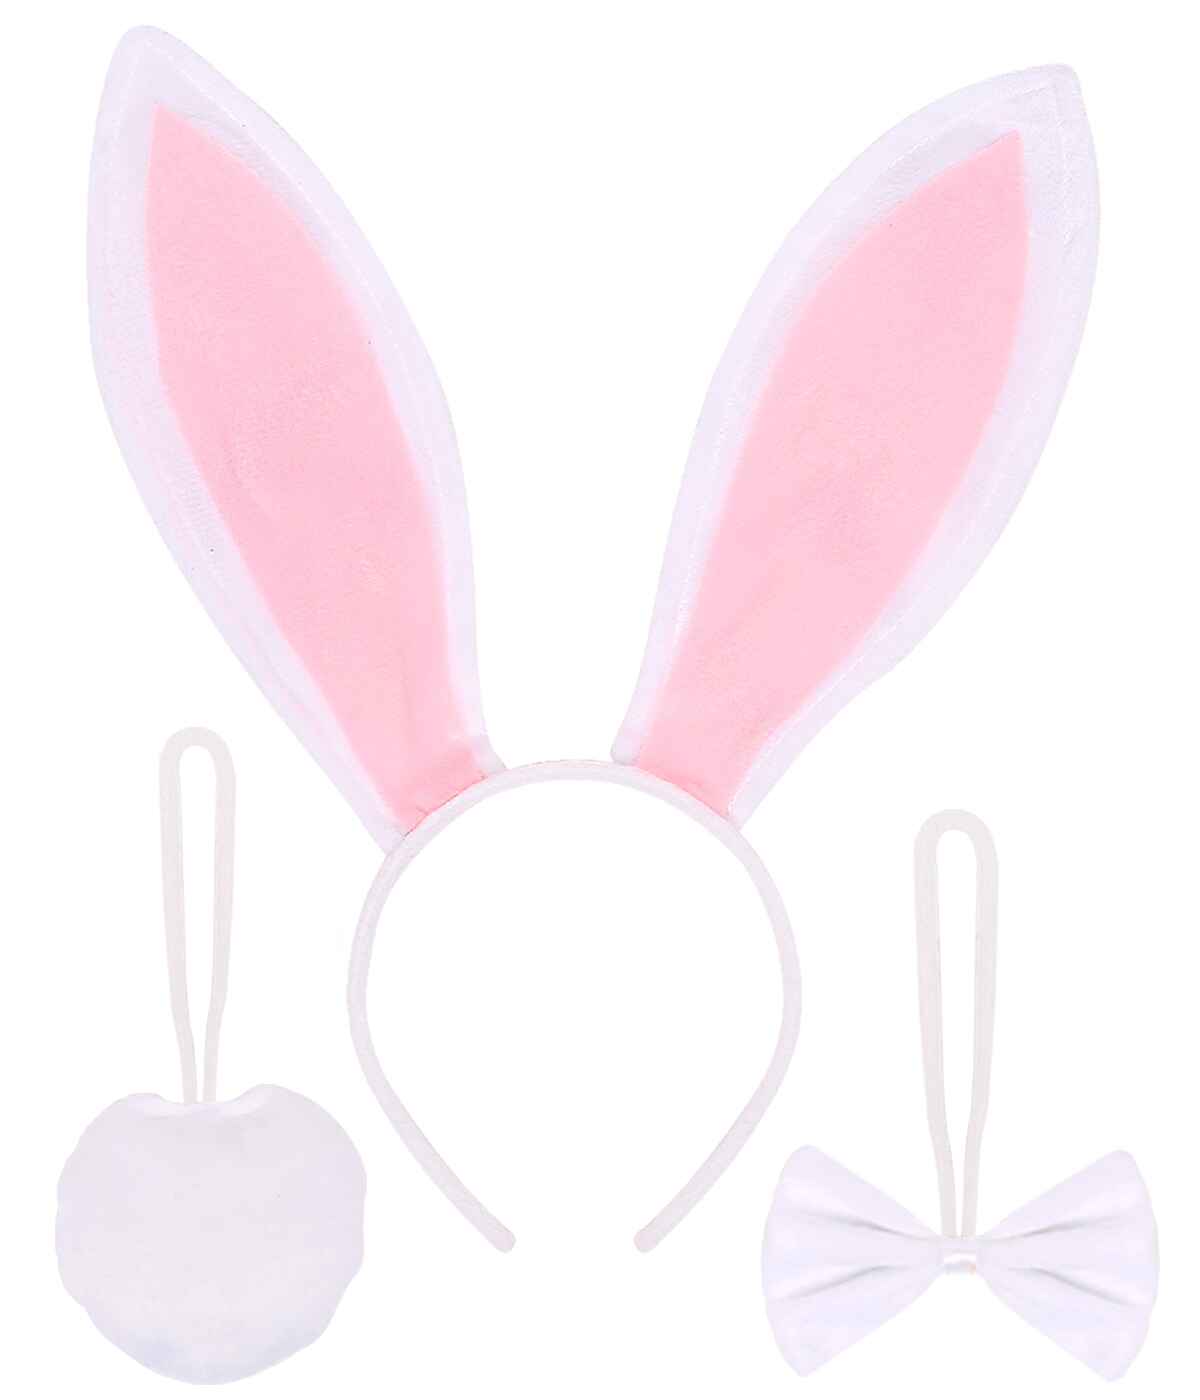 Funcredible Bunny Ears Headband Kit